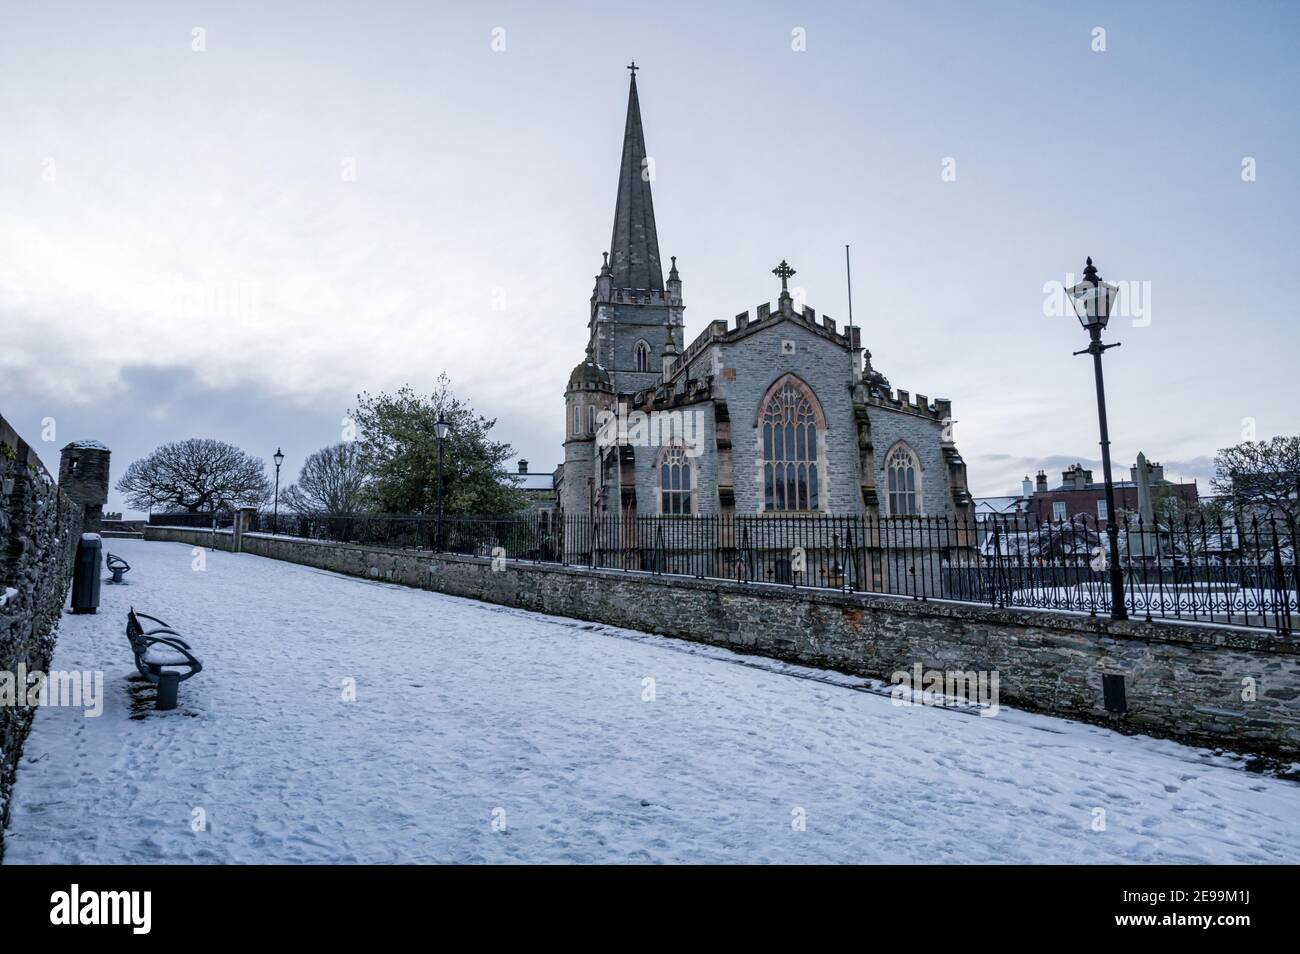 Derry, Norther Ireland - 23. Jan 2021: St Columb's Cathedral in den Derry Walls im Winter mit Schnee bedeckt Stockfoto